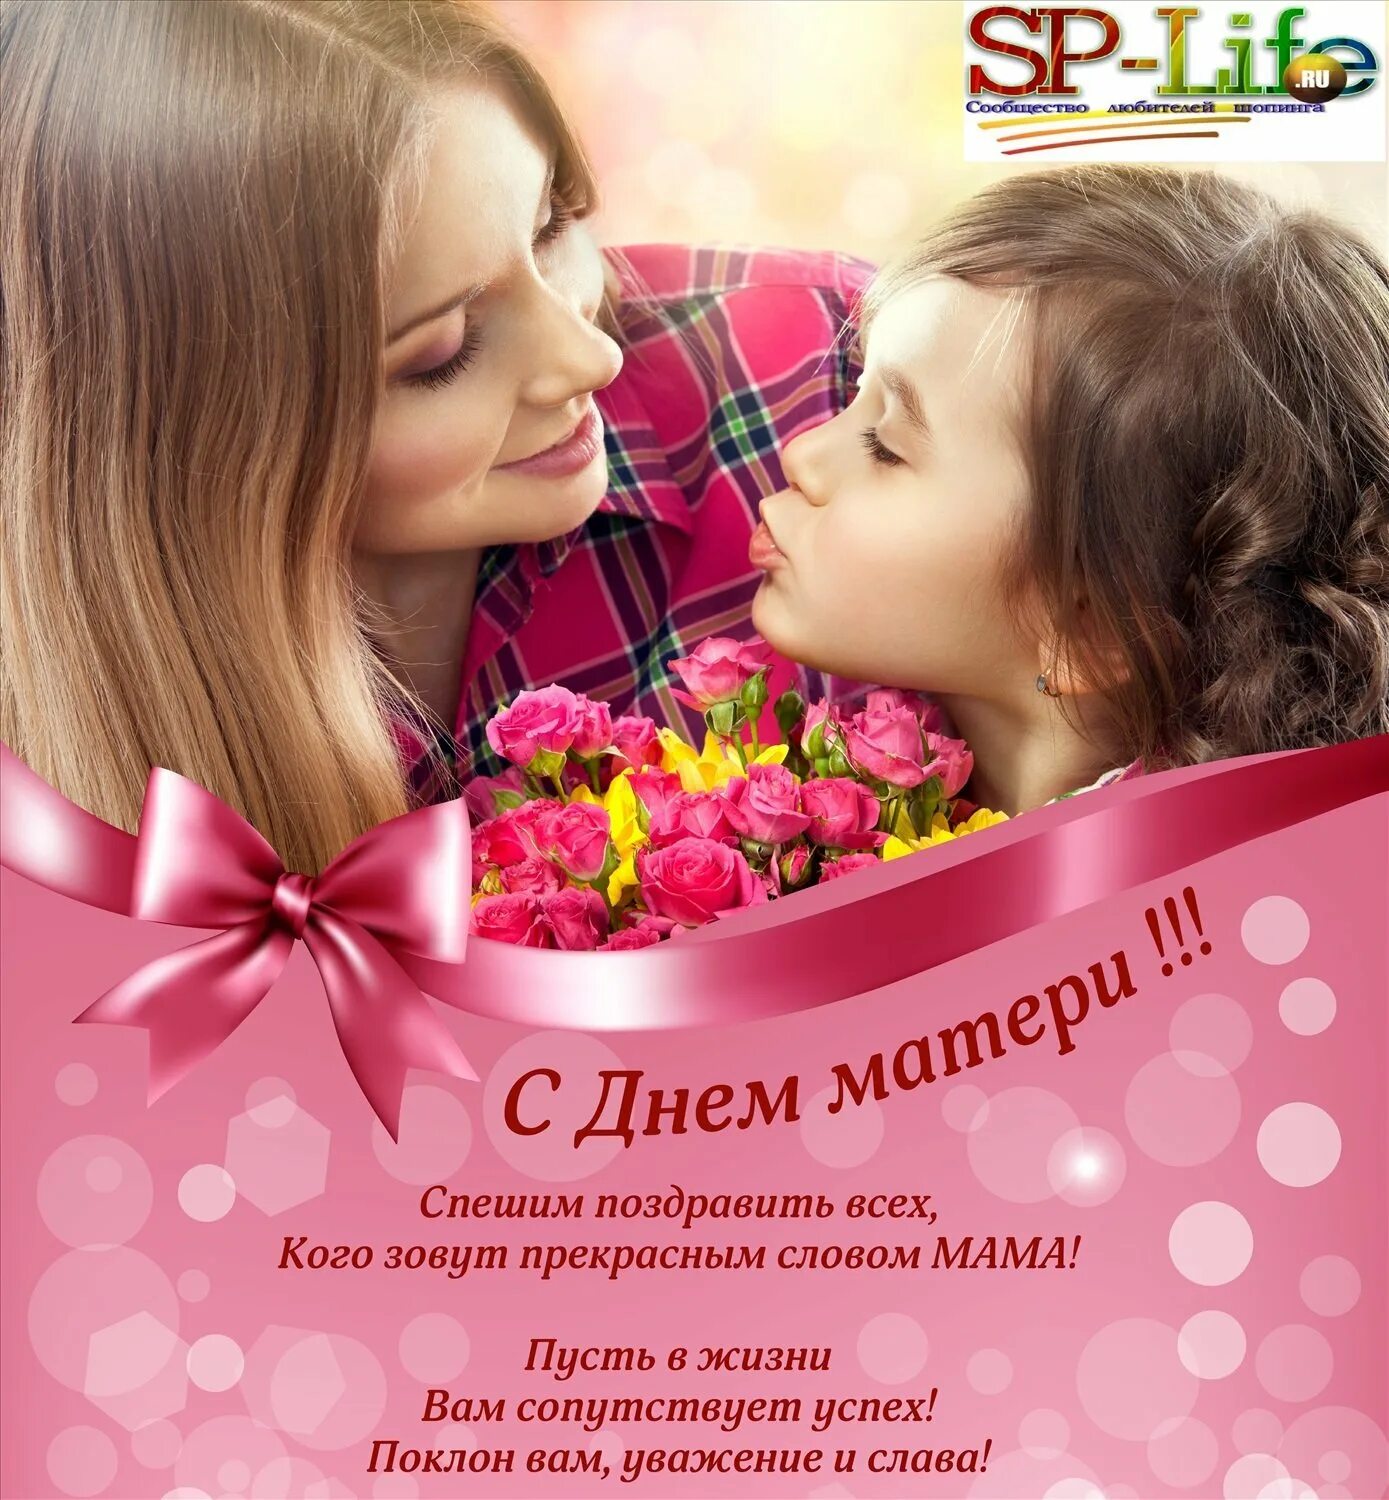 Последний день ноября день матери. День матери. День матери в России. С праздником днем матери поздравления. 29 Ноября день матери поздравления.